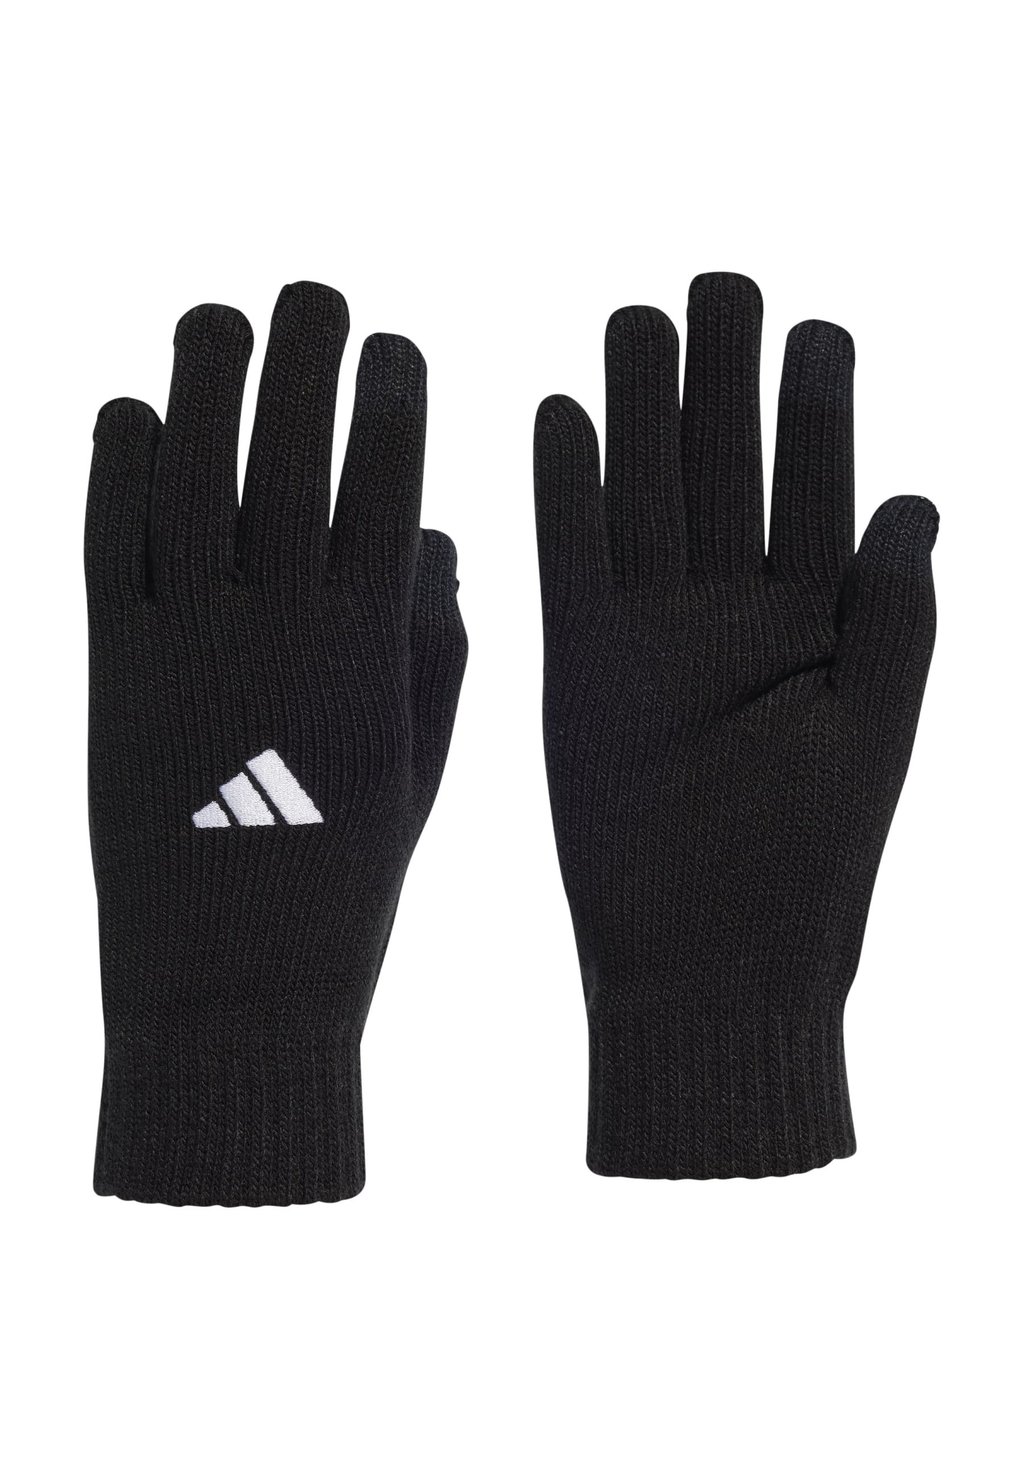 Перчатки вратарские TIRO L Adidas, черный/белый перчатки вратарские adidas x gl красный